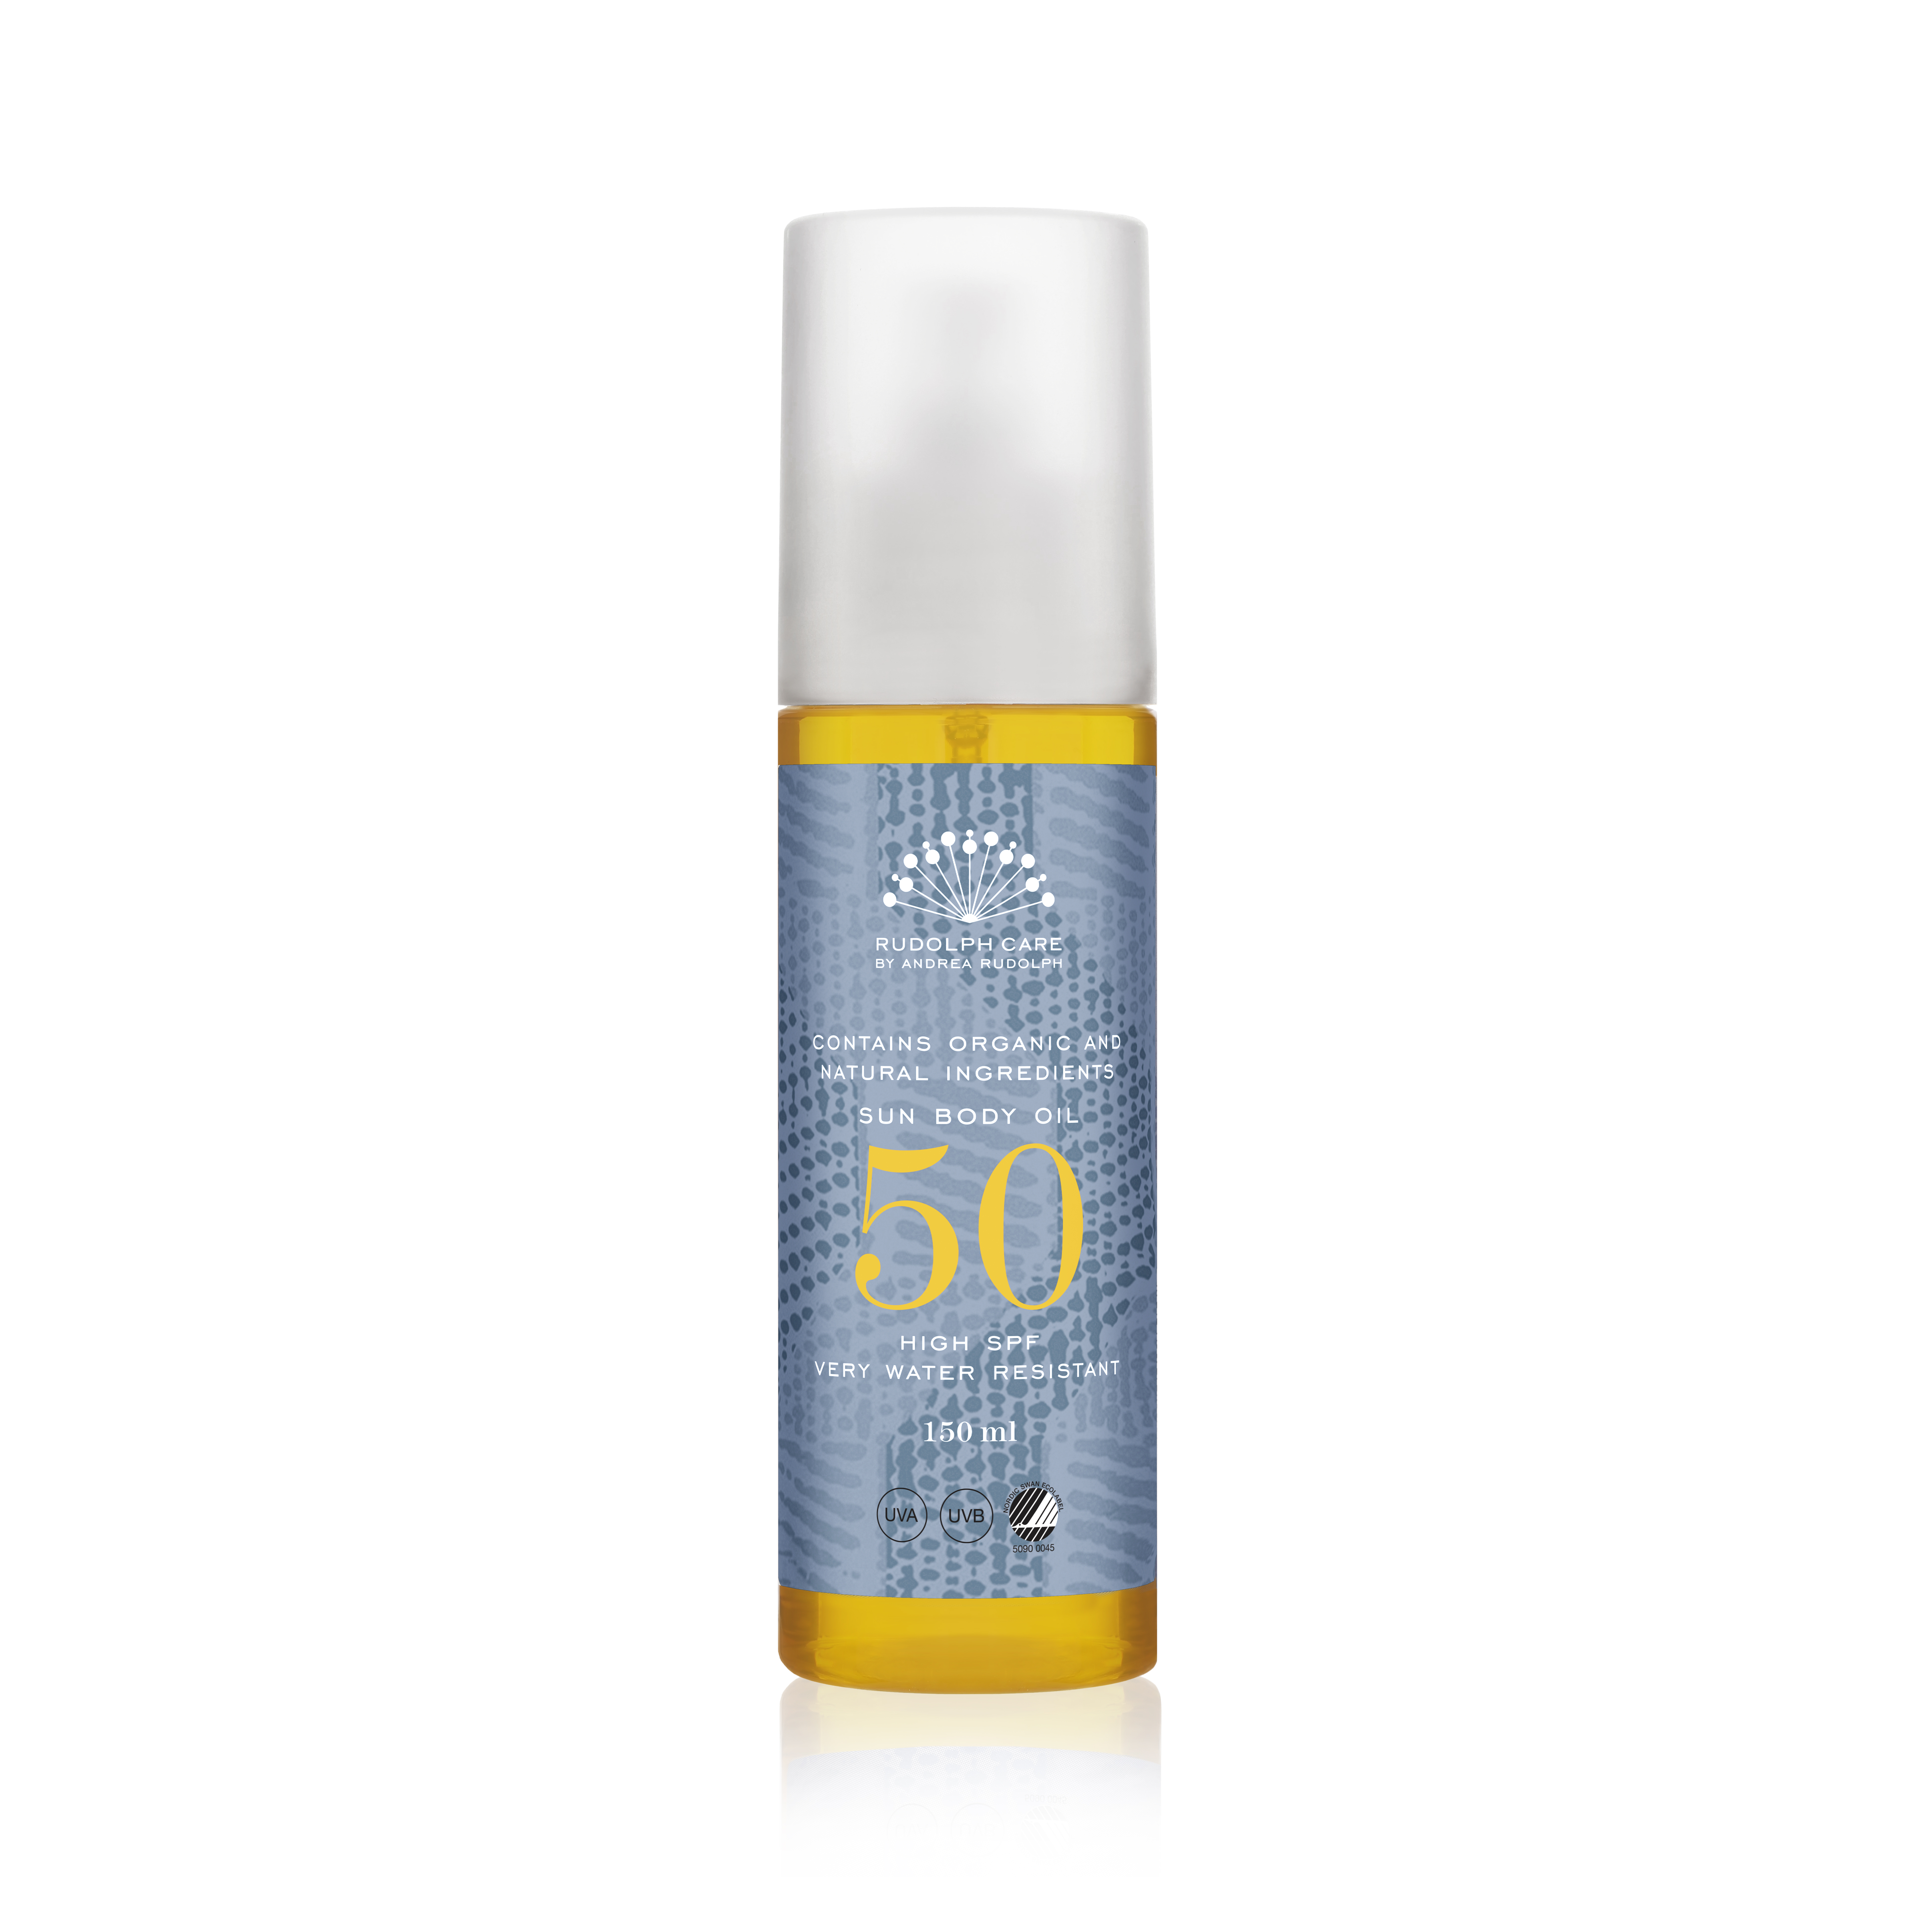  Sun Body Oil SPF 50